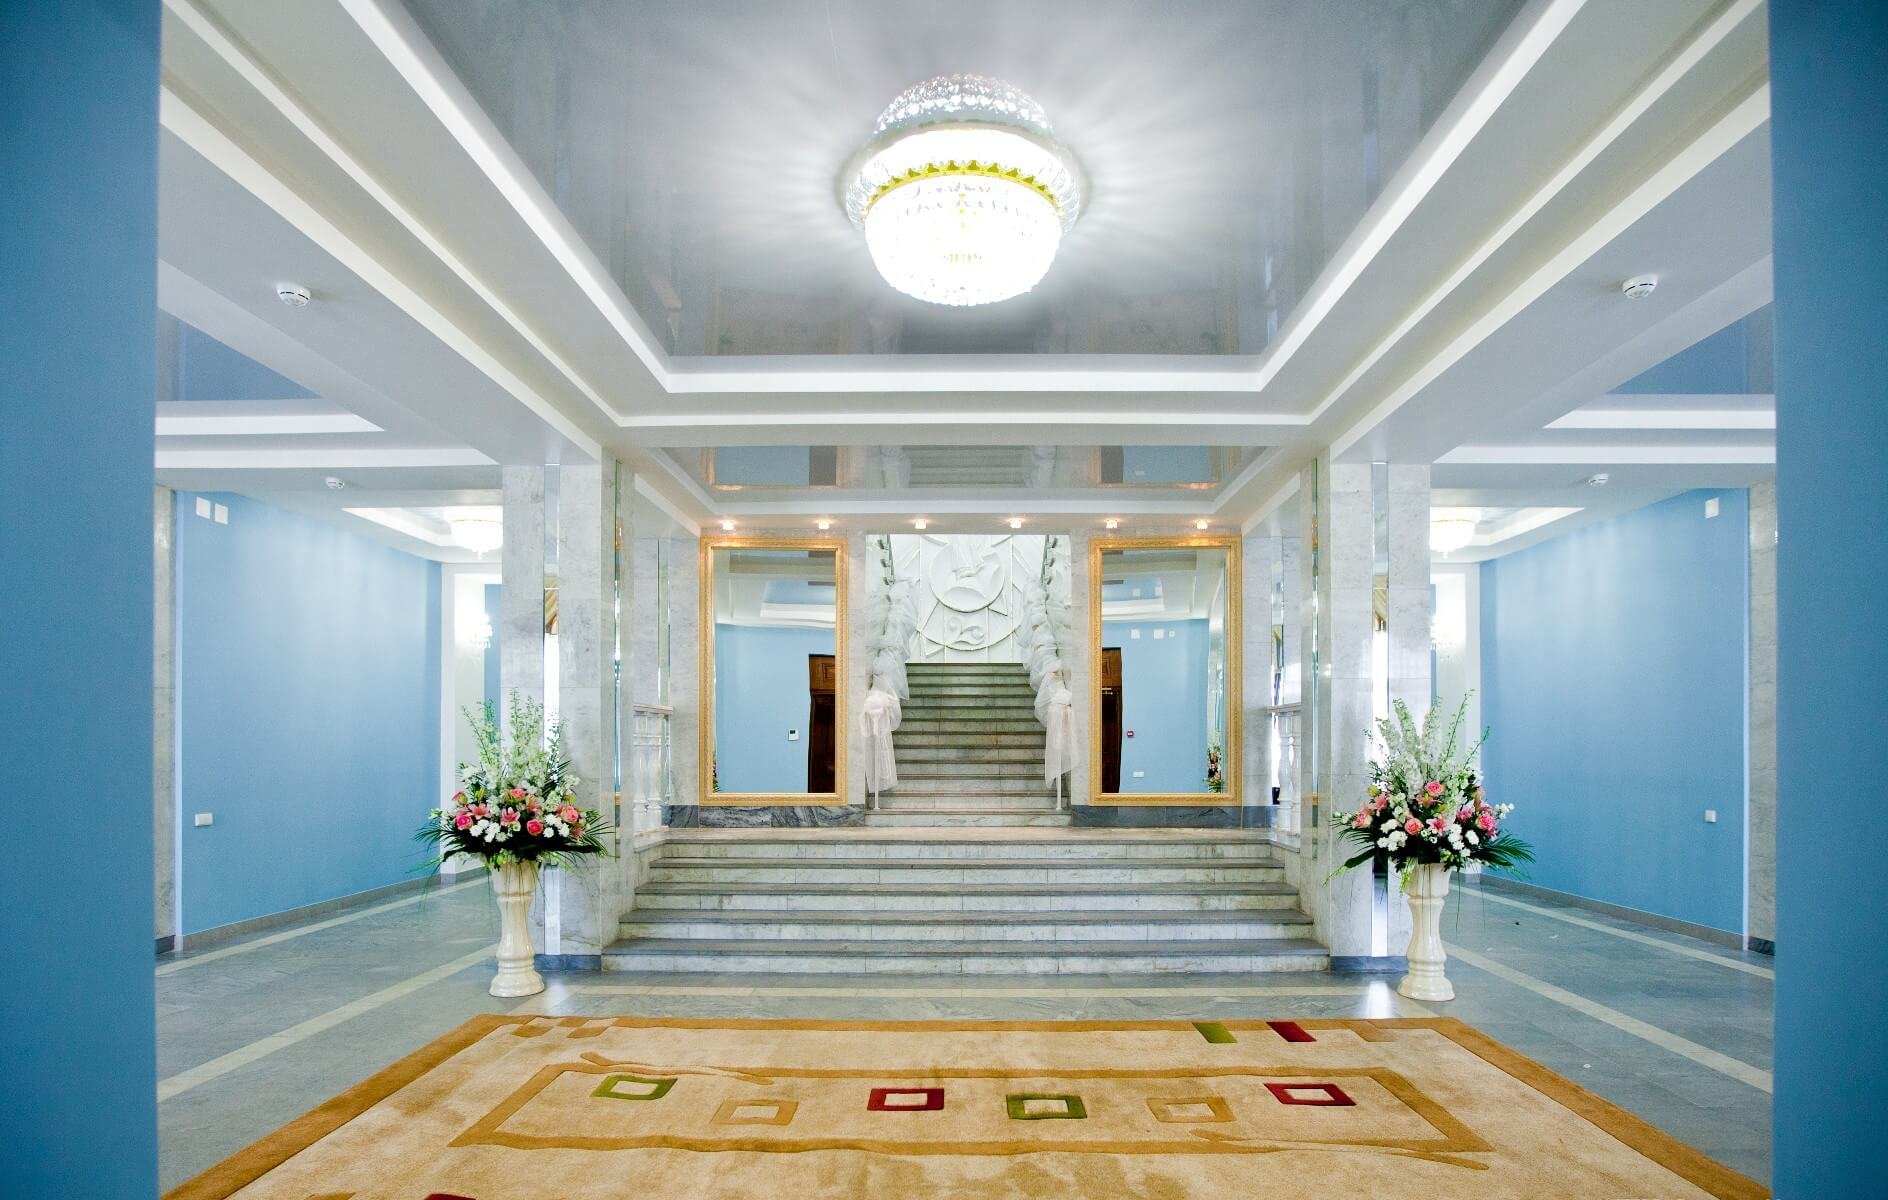 зал прованс в новосибирске дворце бракосочетания